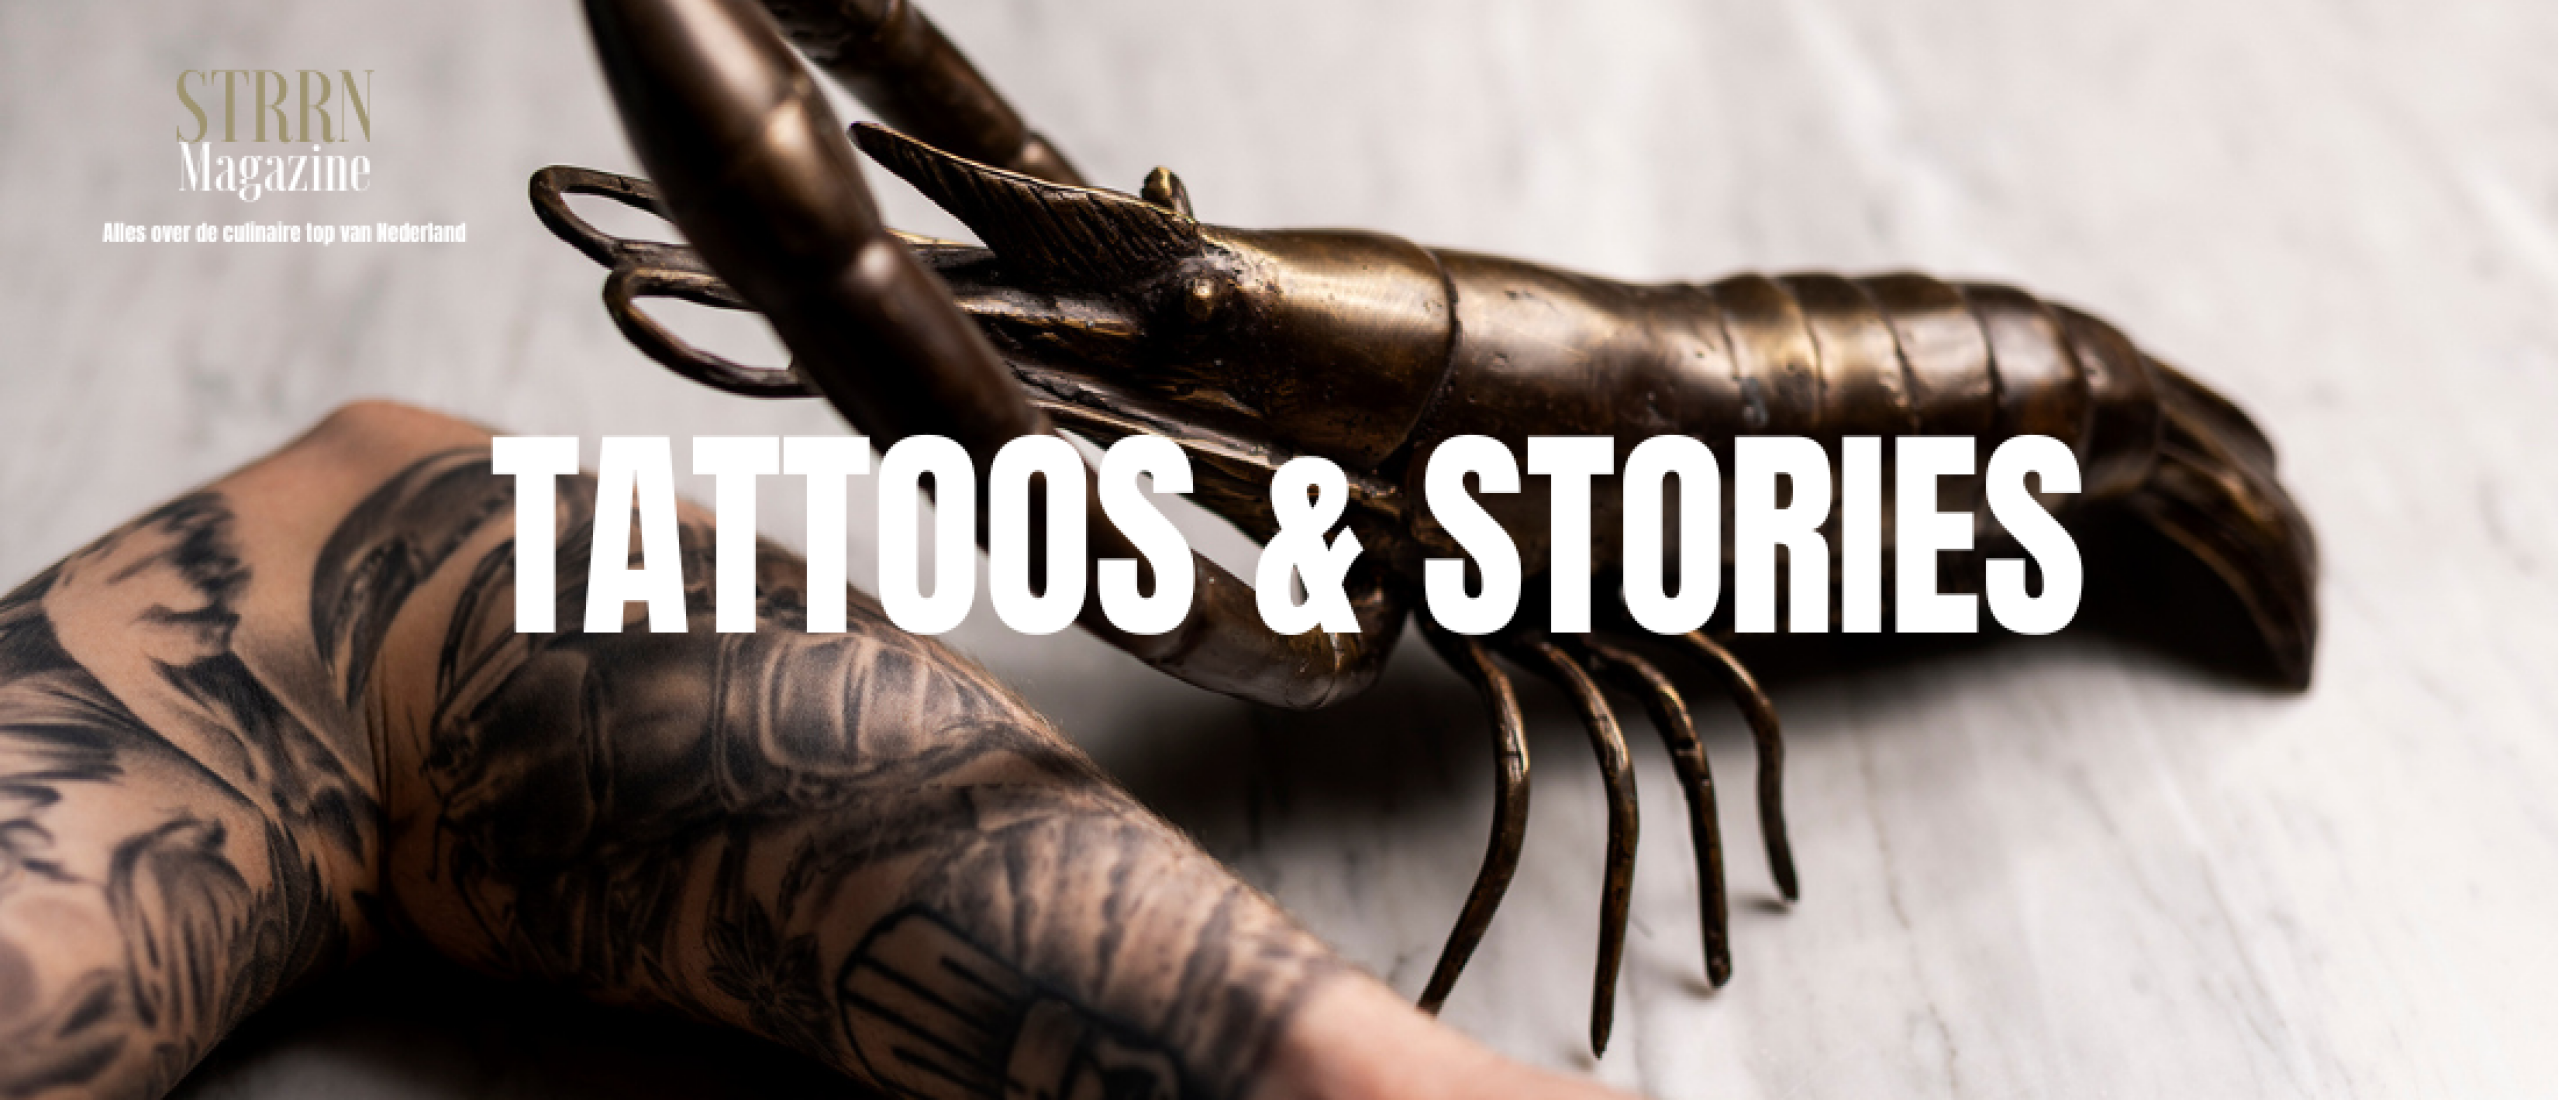 Tattoos & stories met Ollie Schuiling. Verhalen achter de tattoos van topchefs.